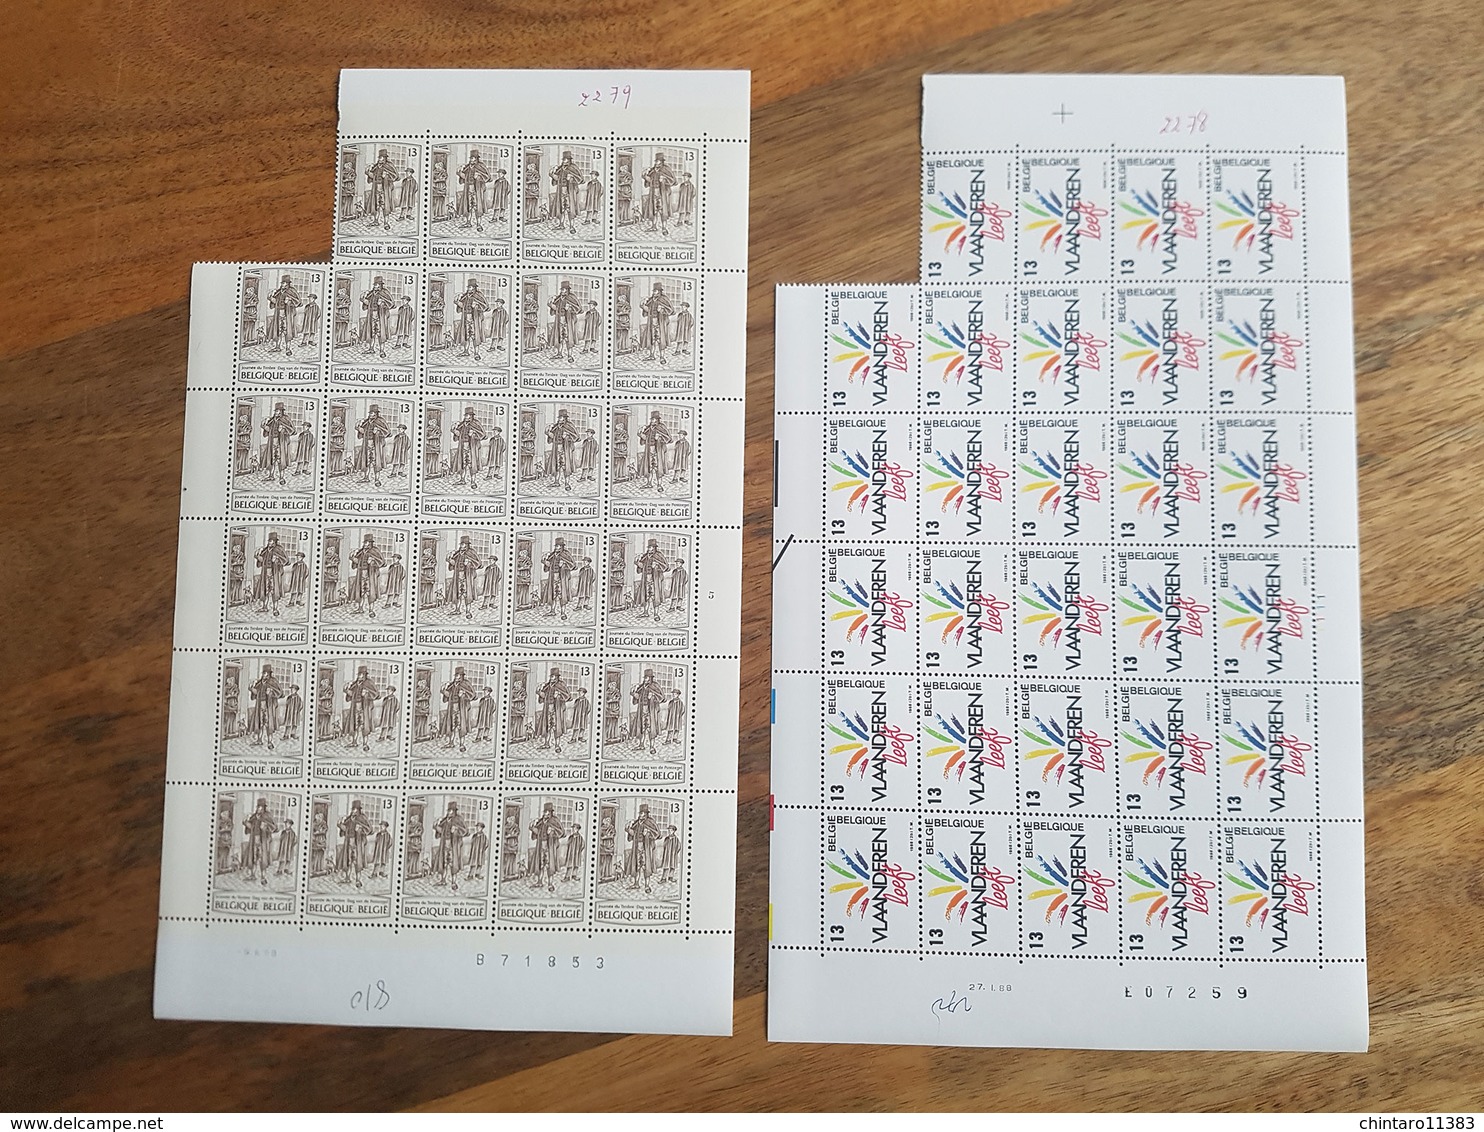 Lot feuilles incomplètes de timbres Belgique - Année 1988